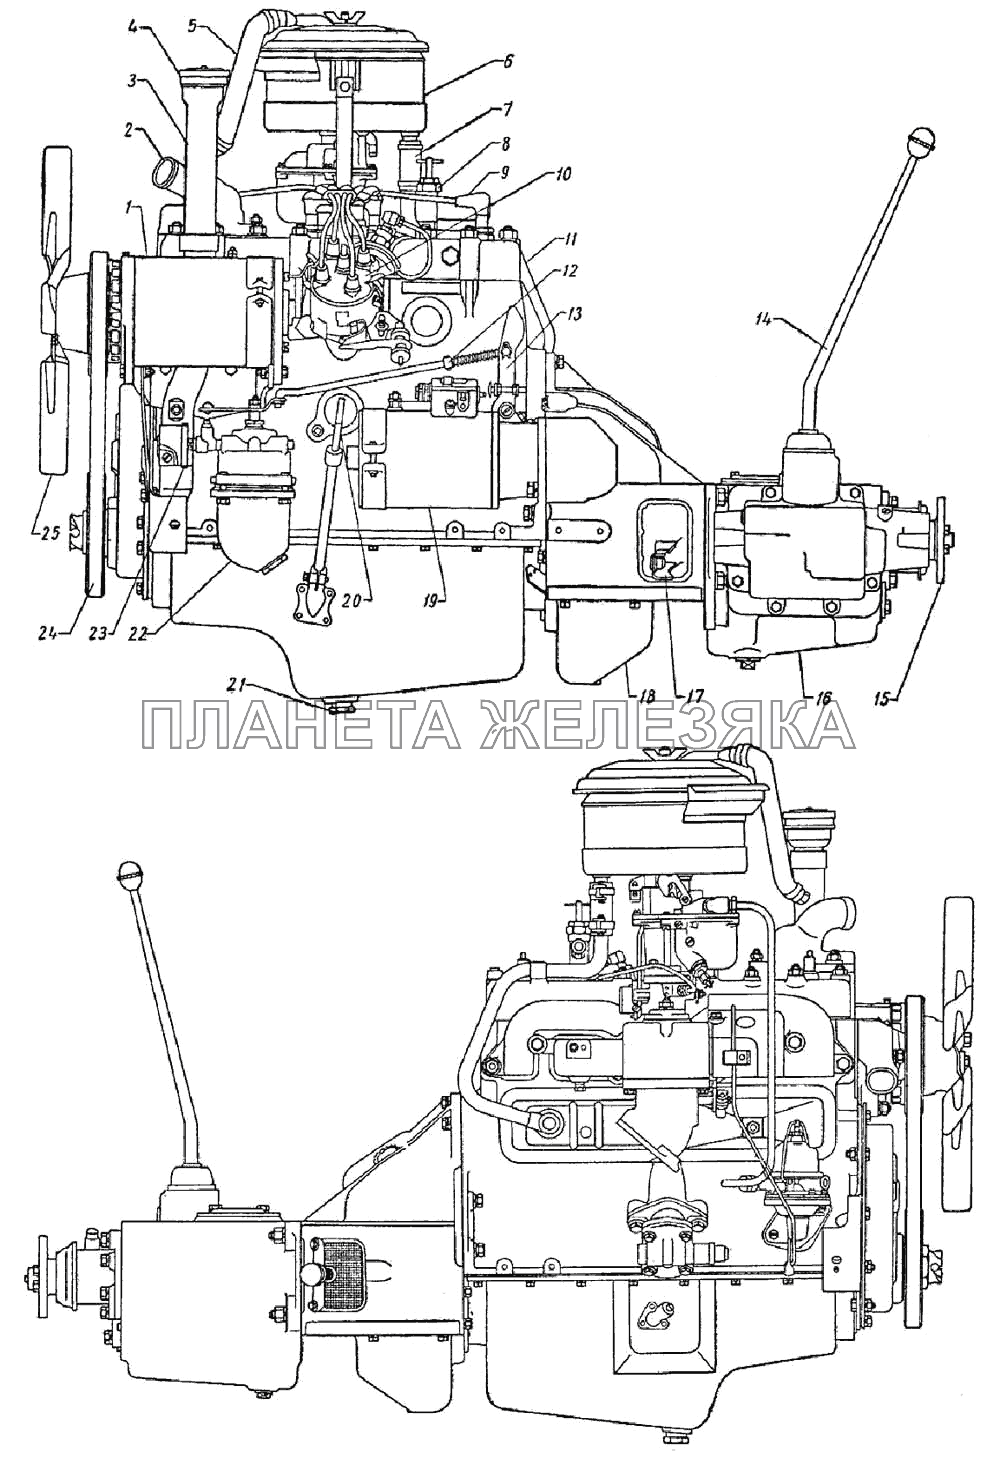 Двигатель, сцепление и коробка передач в сборе ГАЗ-69